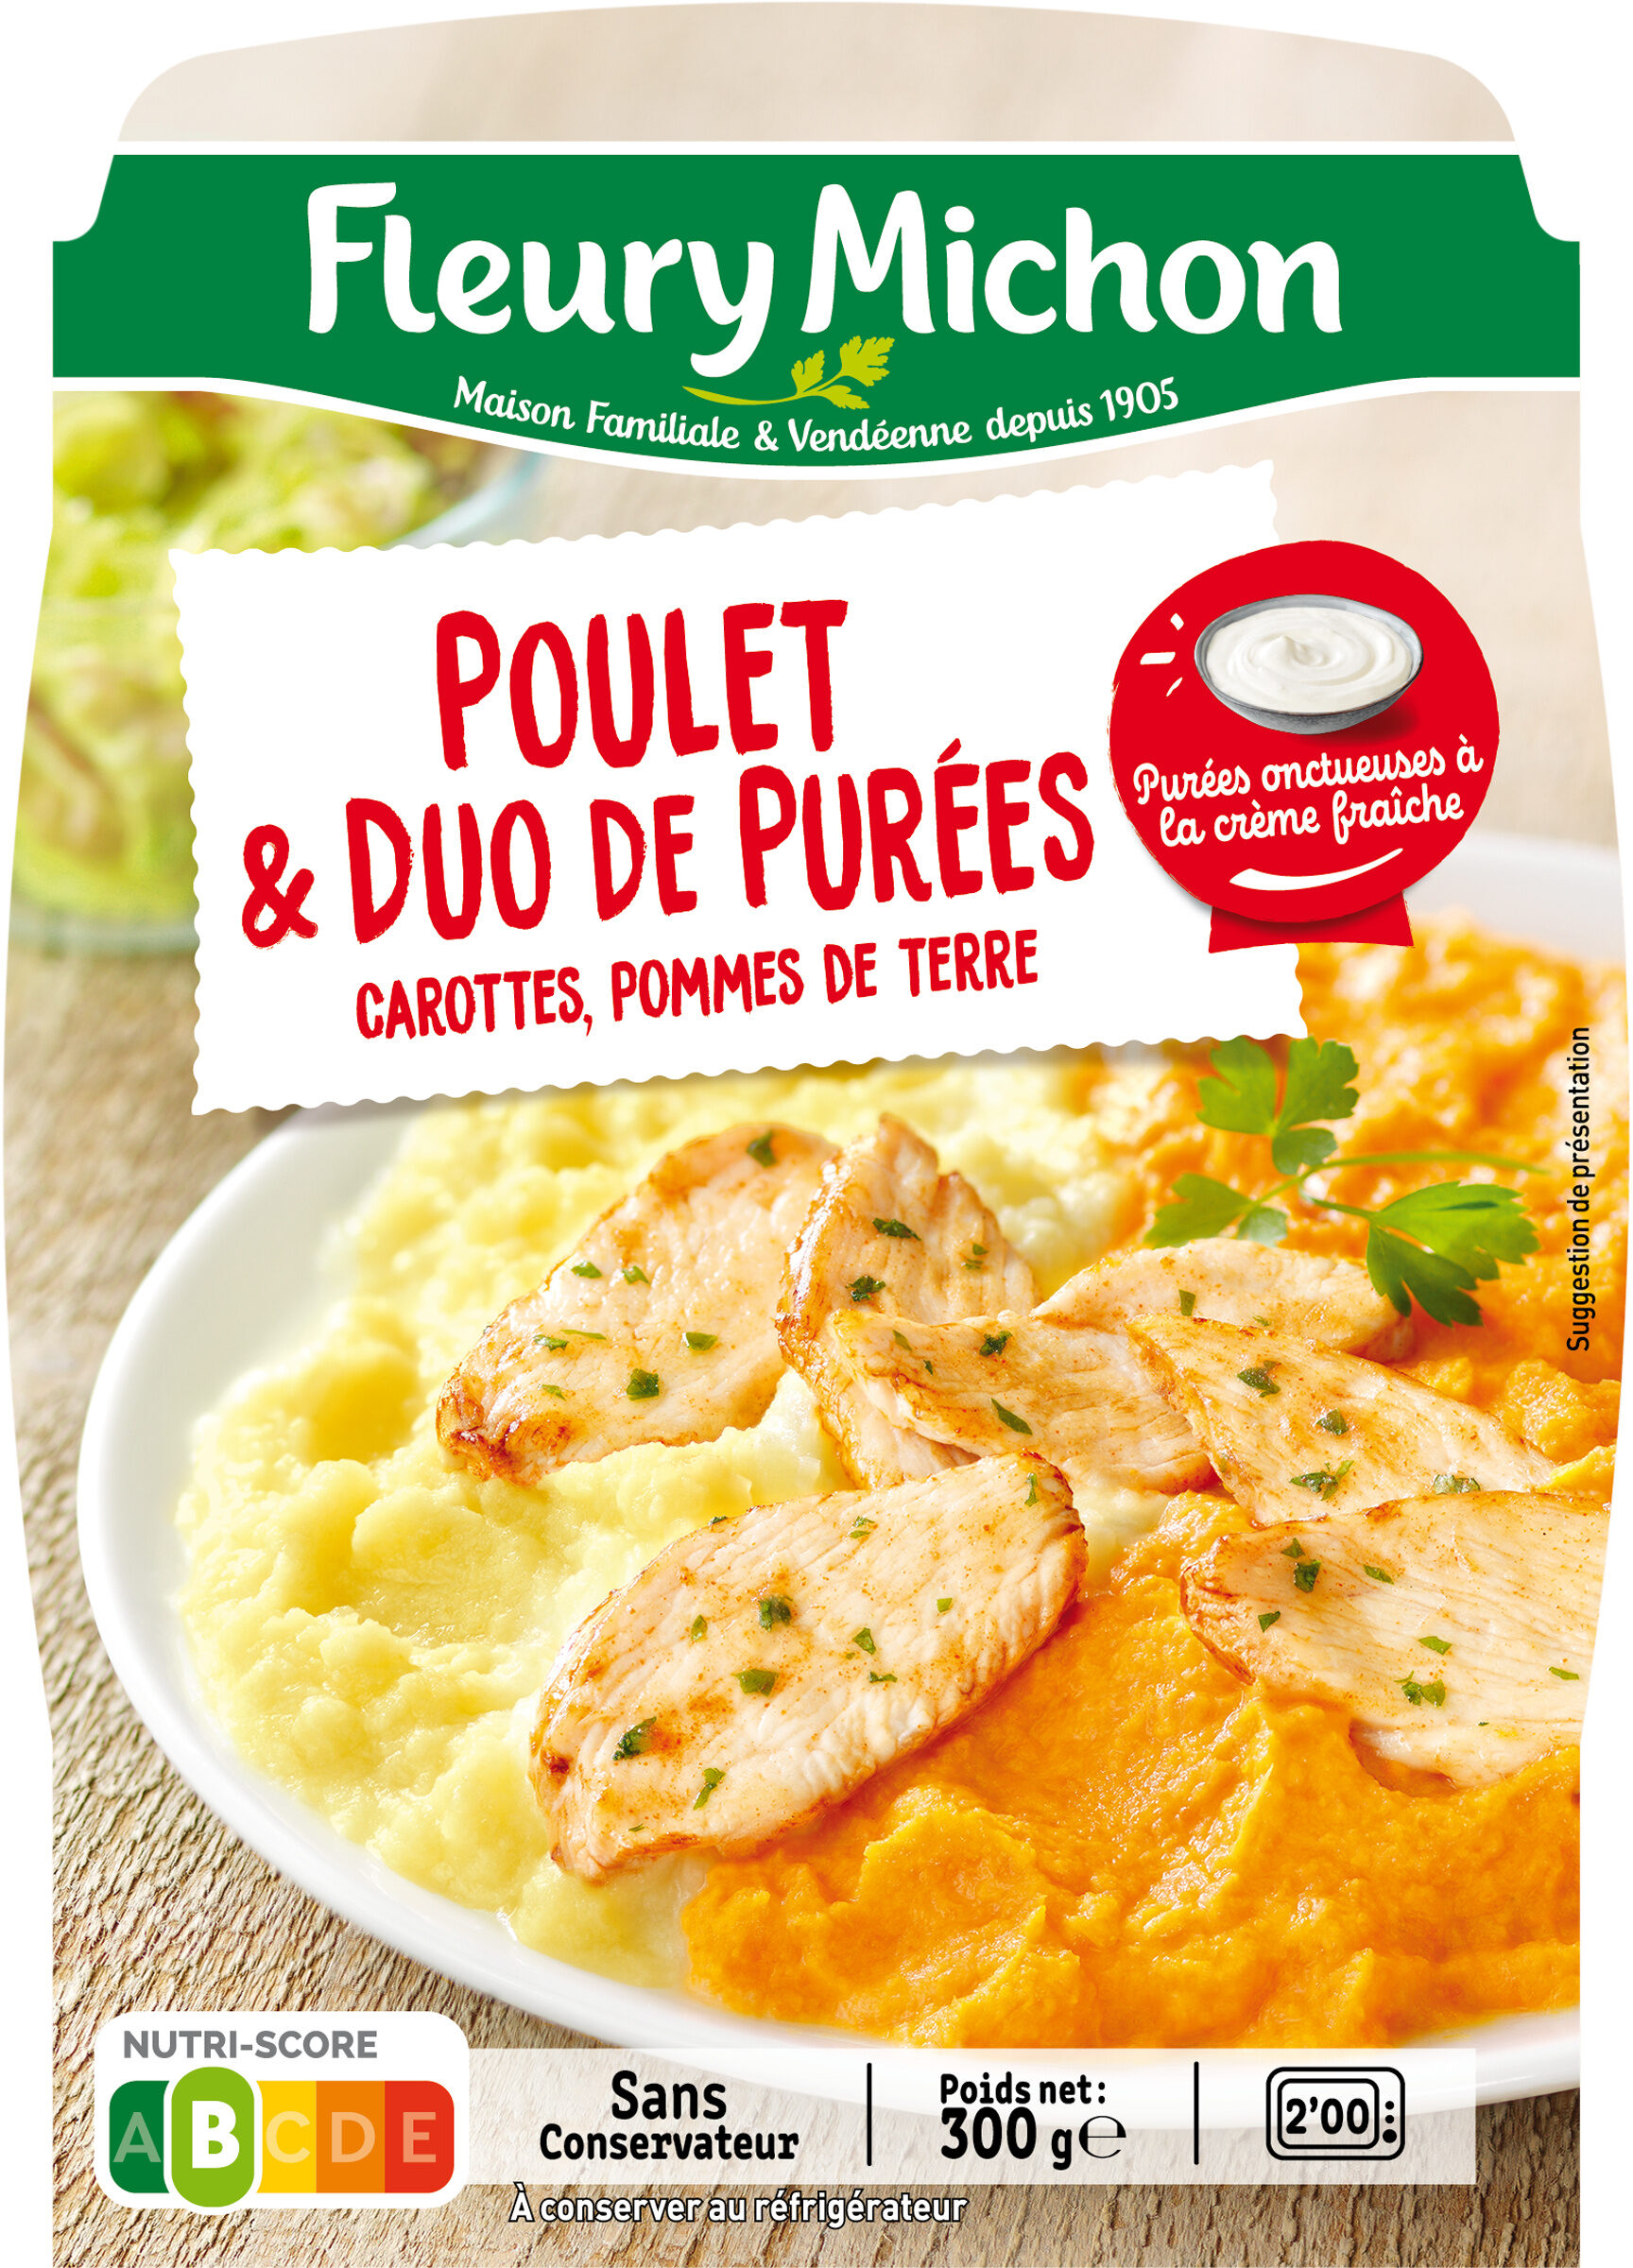 Poulet & duo de purées, carottes, pommes de terre - Produit